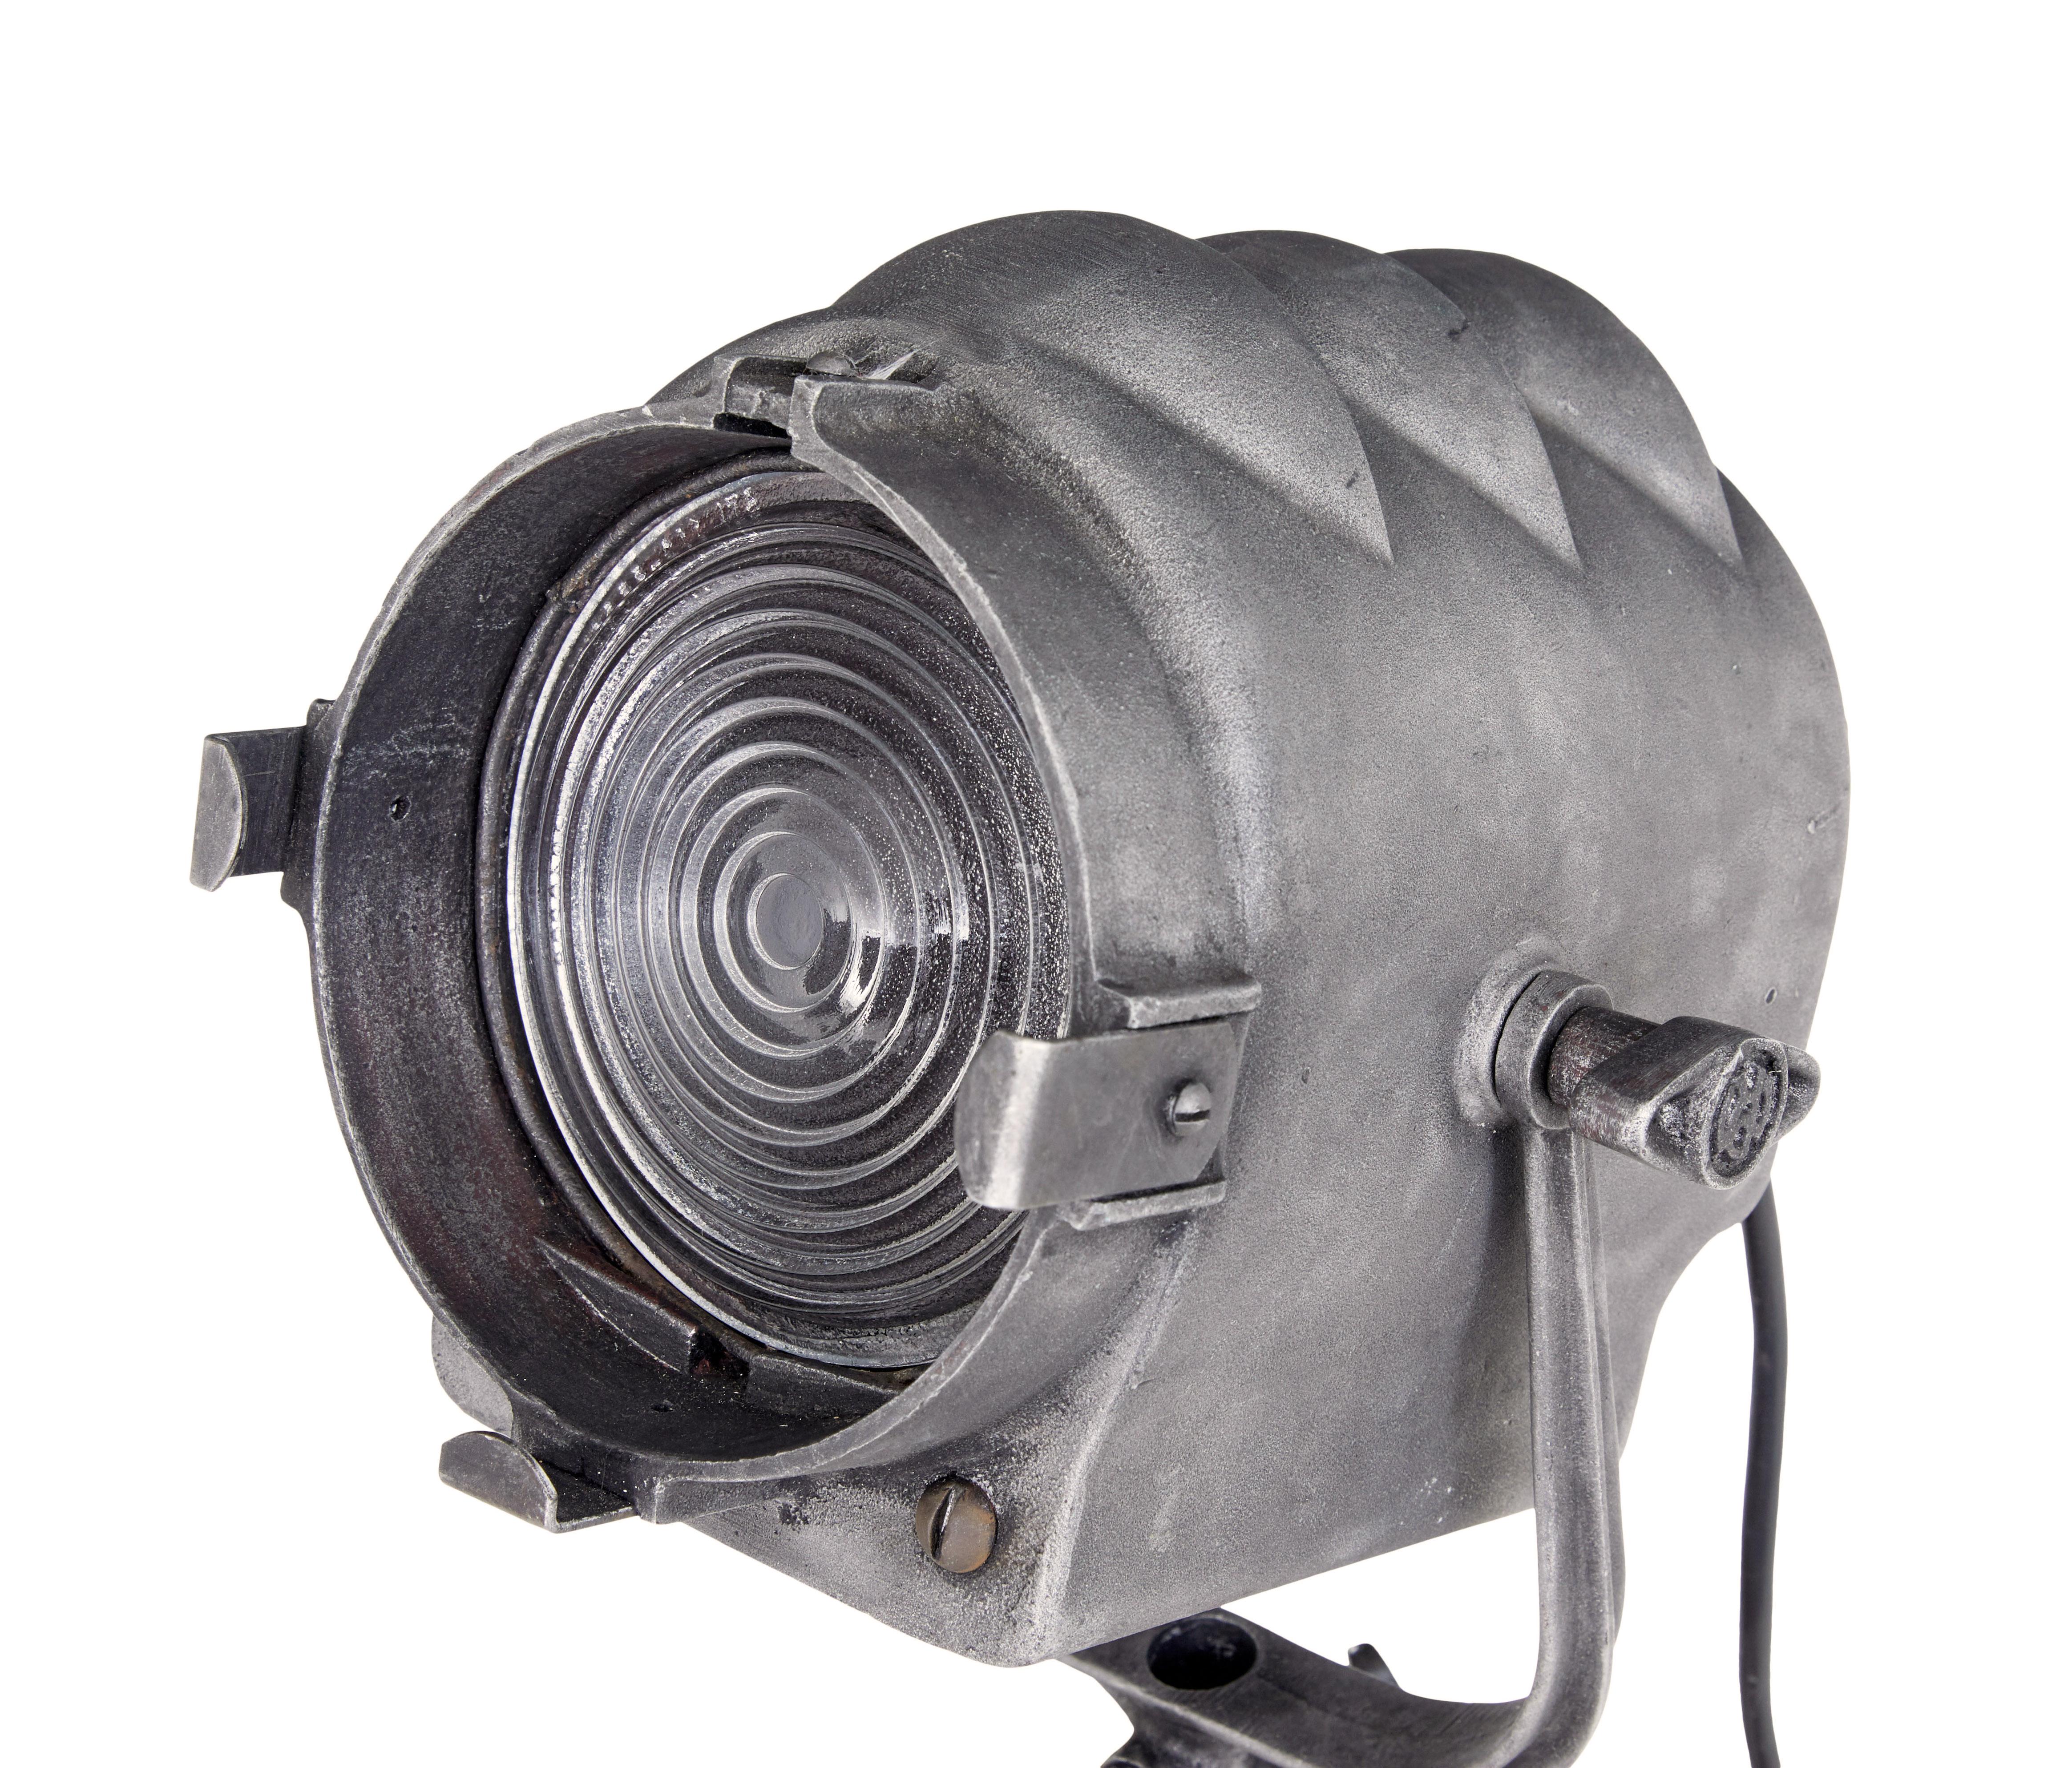 Mitte des 20. Jahrhunderts amerikanische Spotlampe von Mole Richardson and Co um 1940.

Hier haben wir einen Zwergsonnenfleck vom Typ 2351, der auf einem verstellbaren Eichenstativ präsentiert wird.  Seriennummer 9221.

Dieses Modell wurde für eine